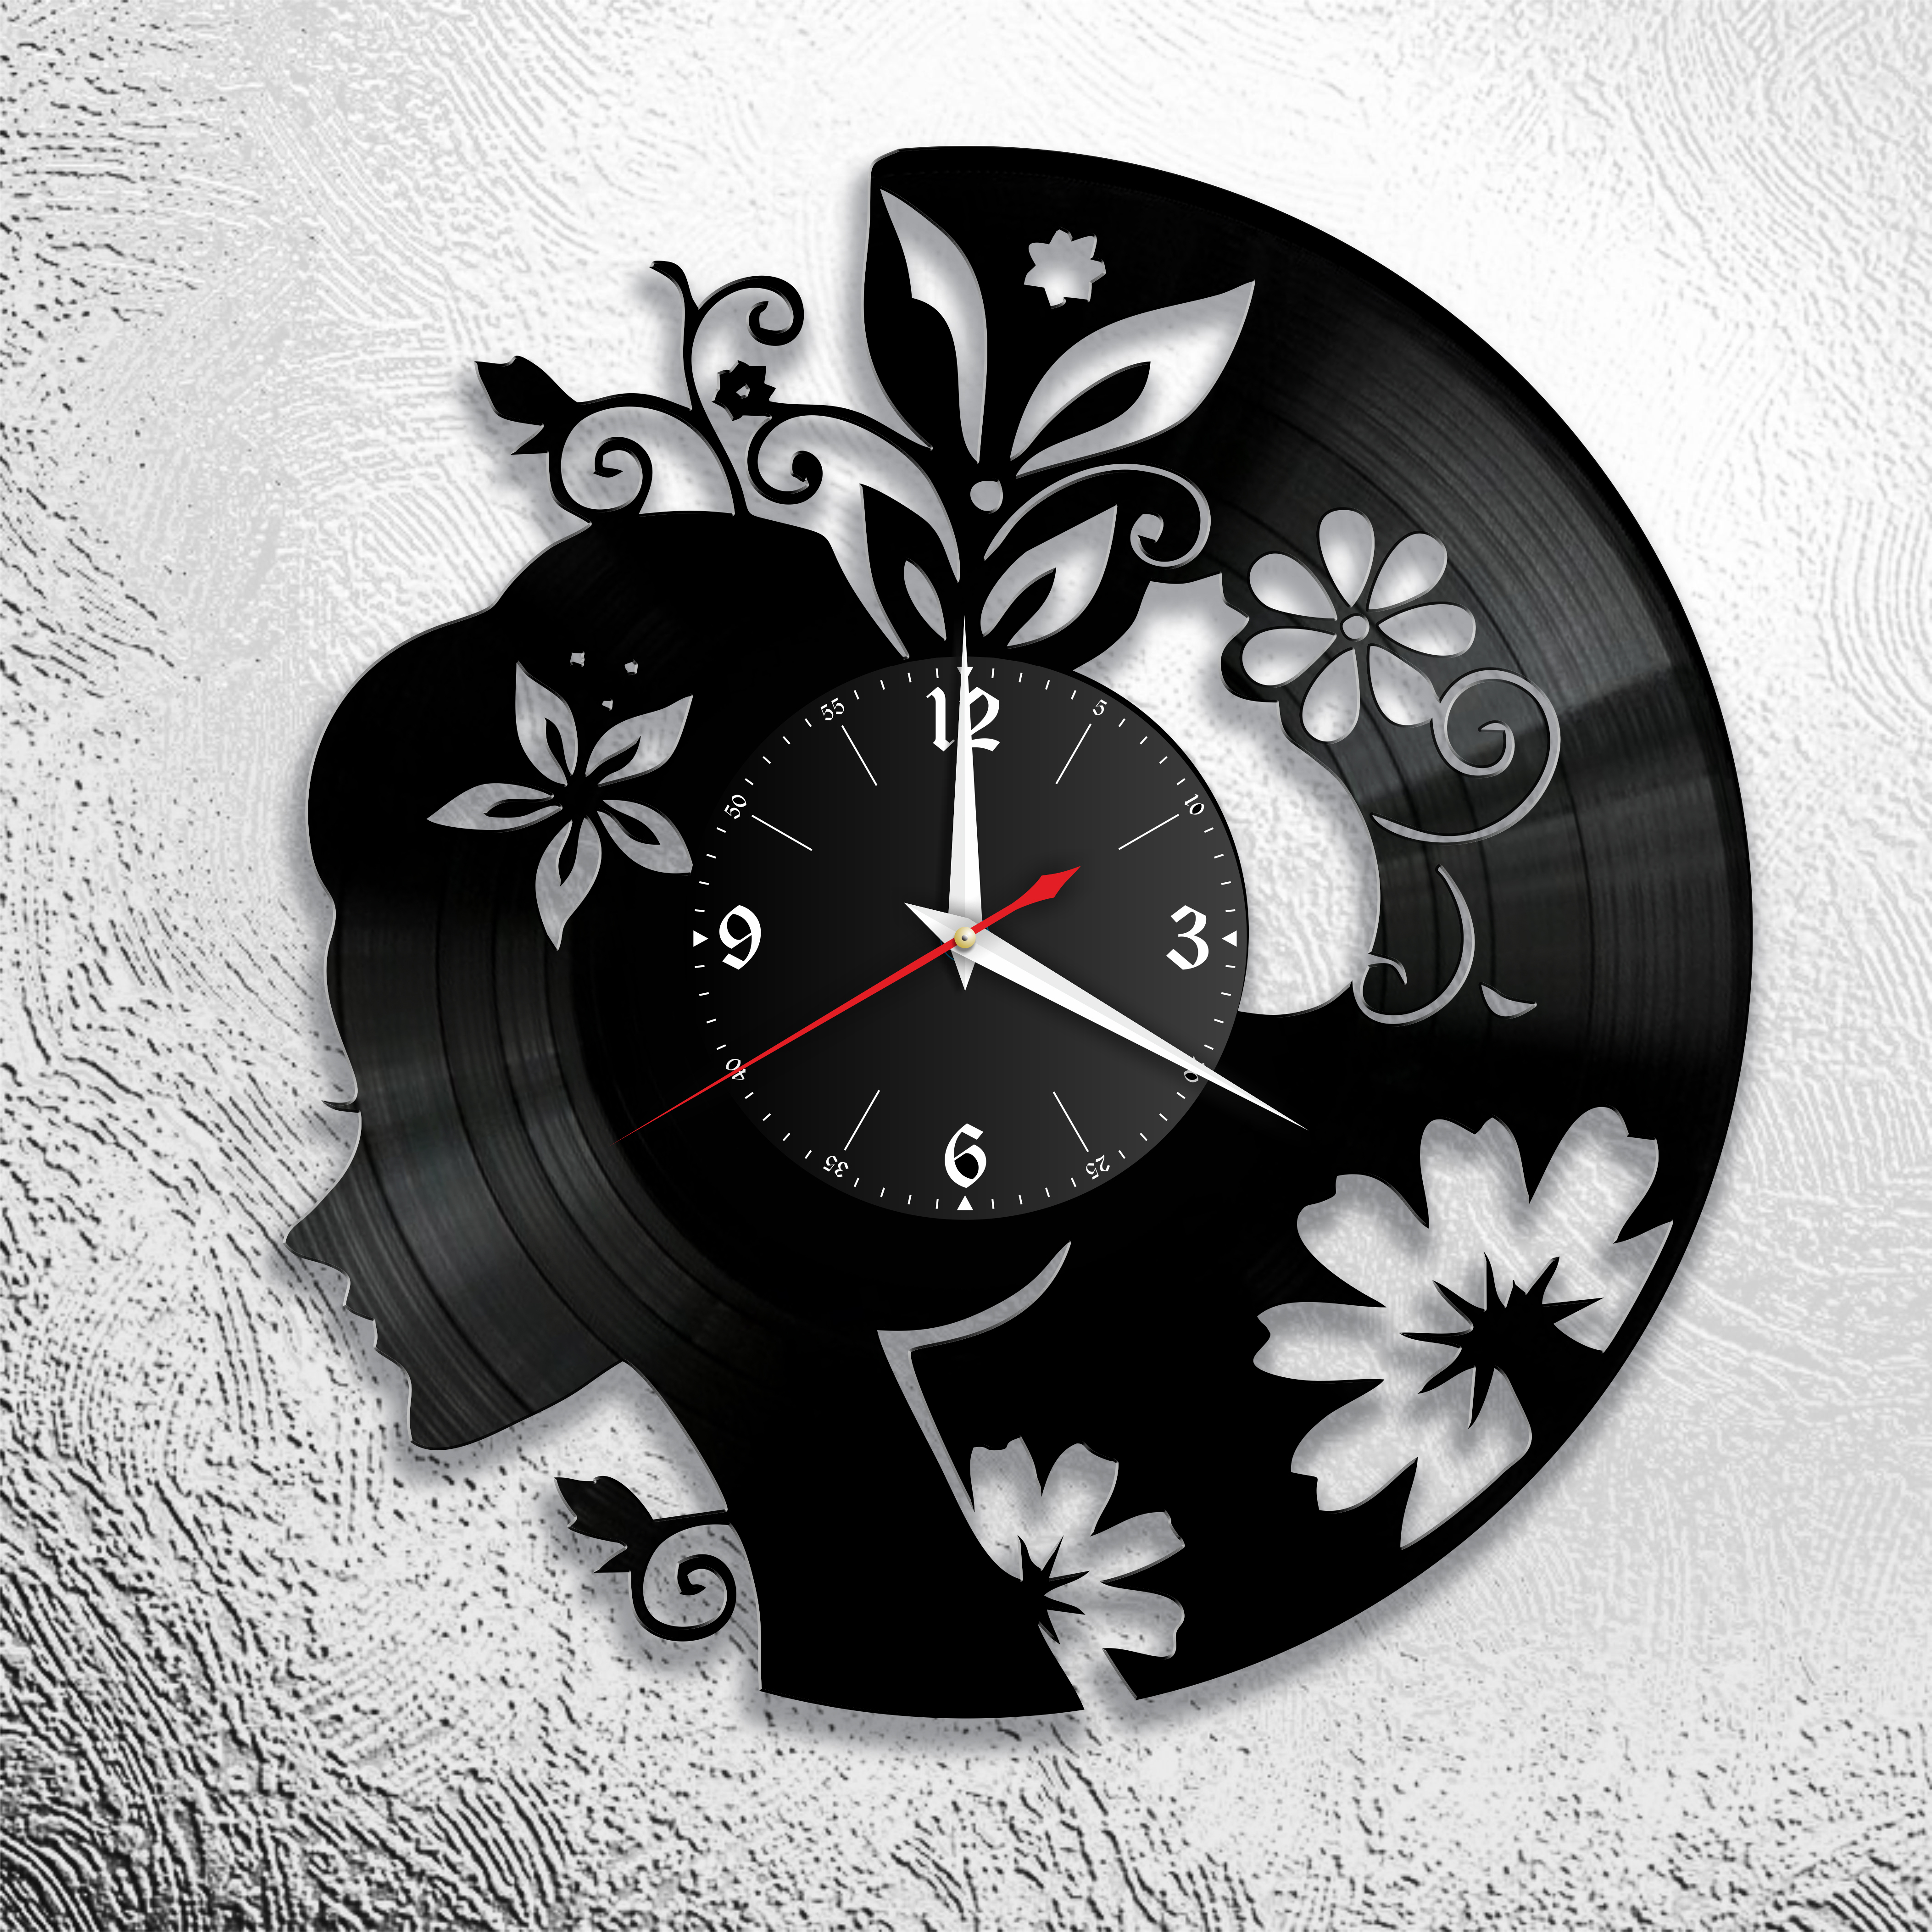 Настенные часы 9. Часы из виниловых пластинок. Оригинальные настенные часы. Часы РЗ виниловых пластинок. Дизайнерские часы.